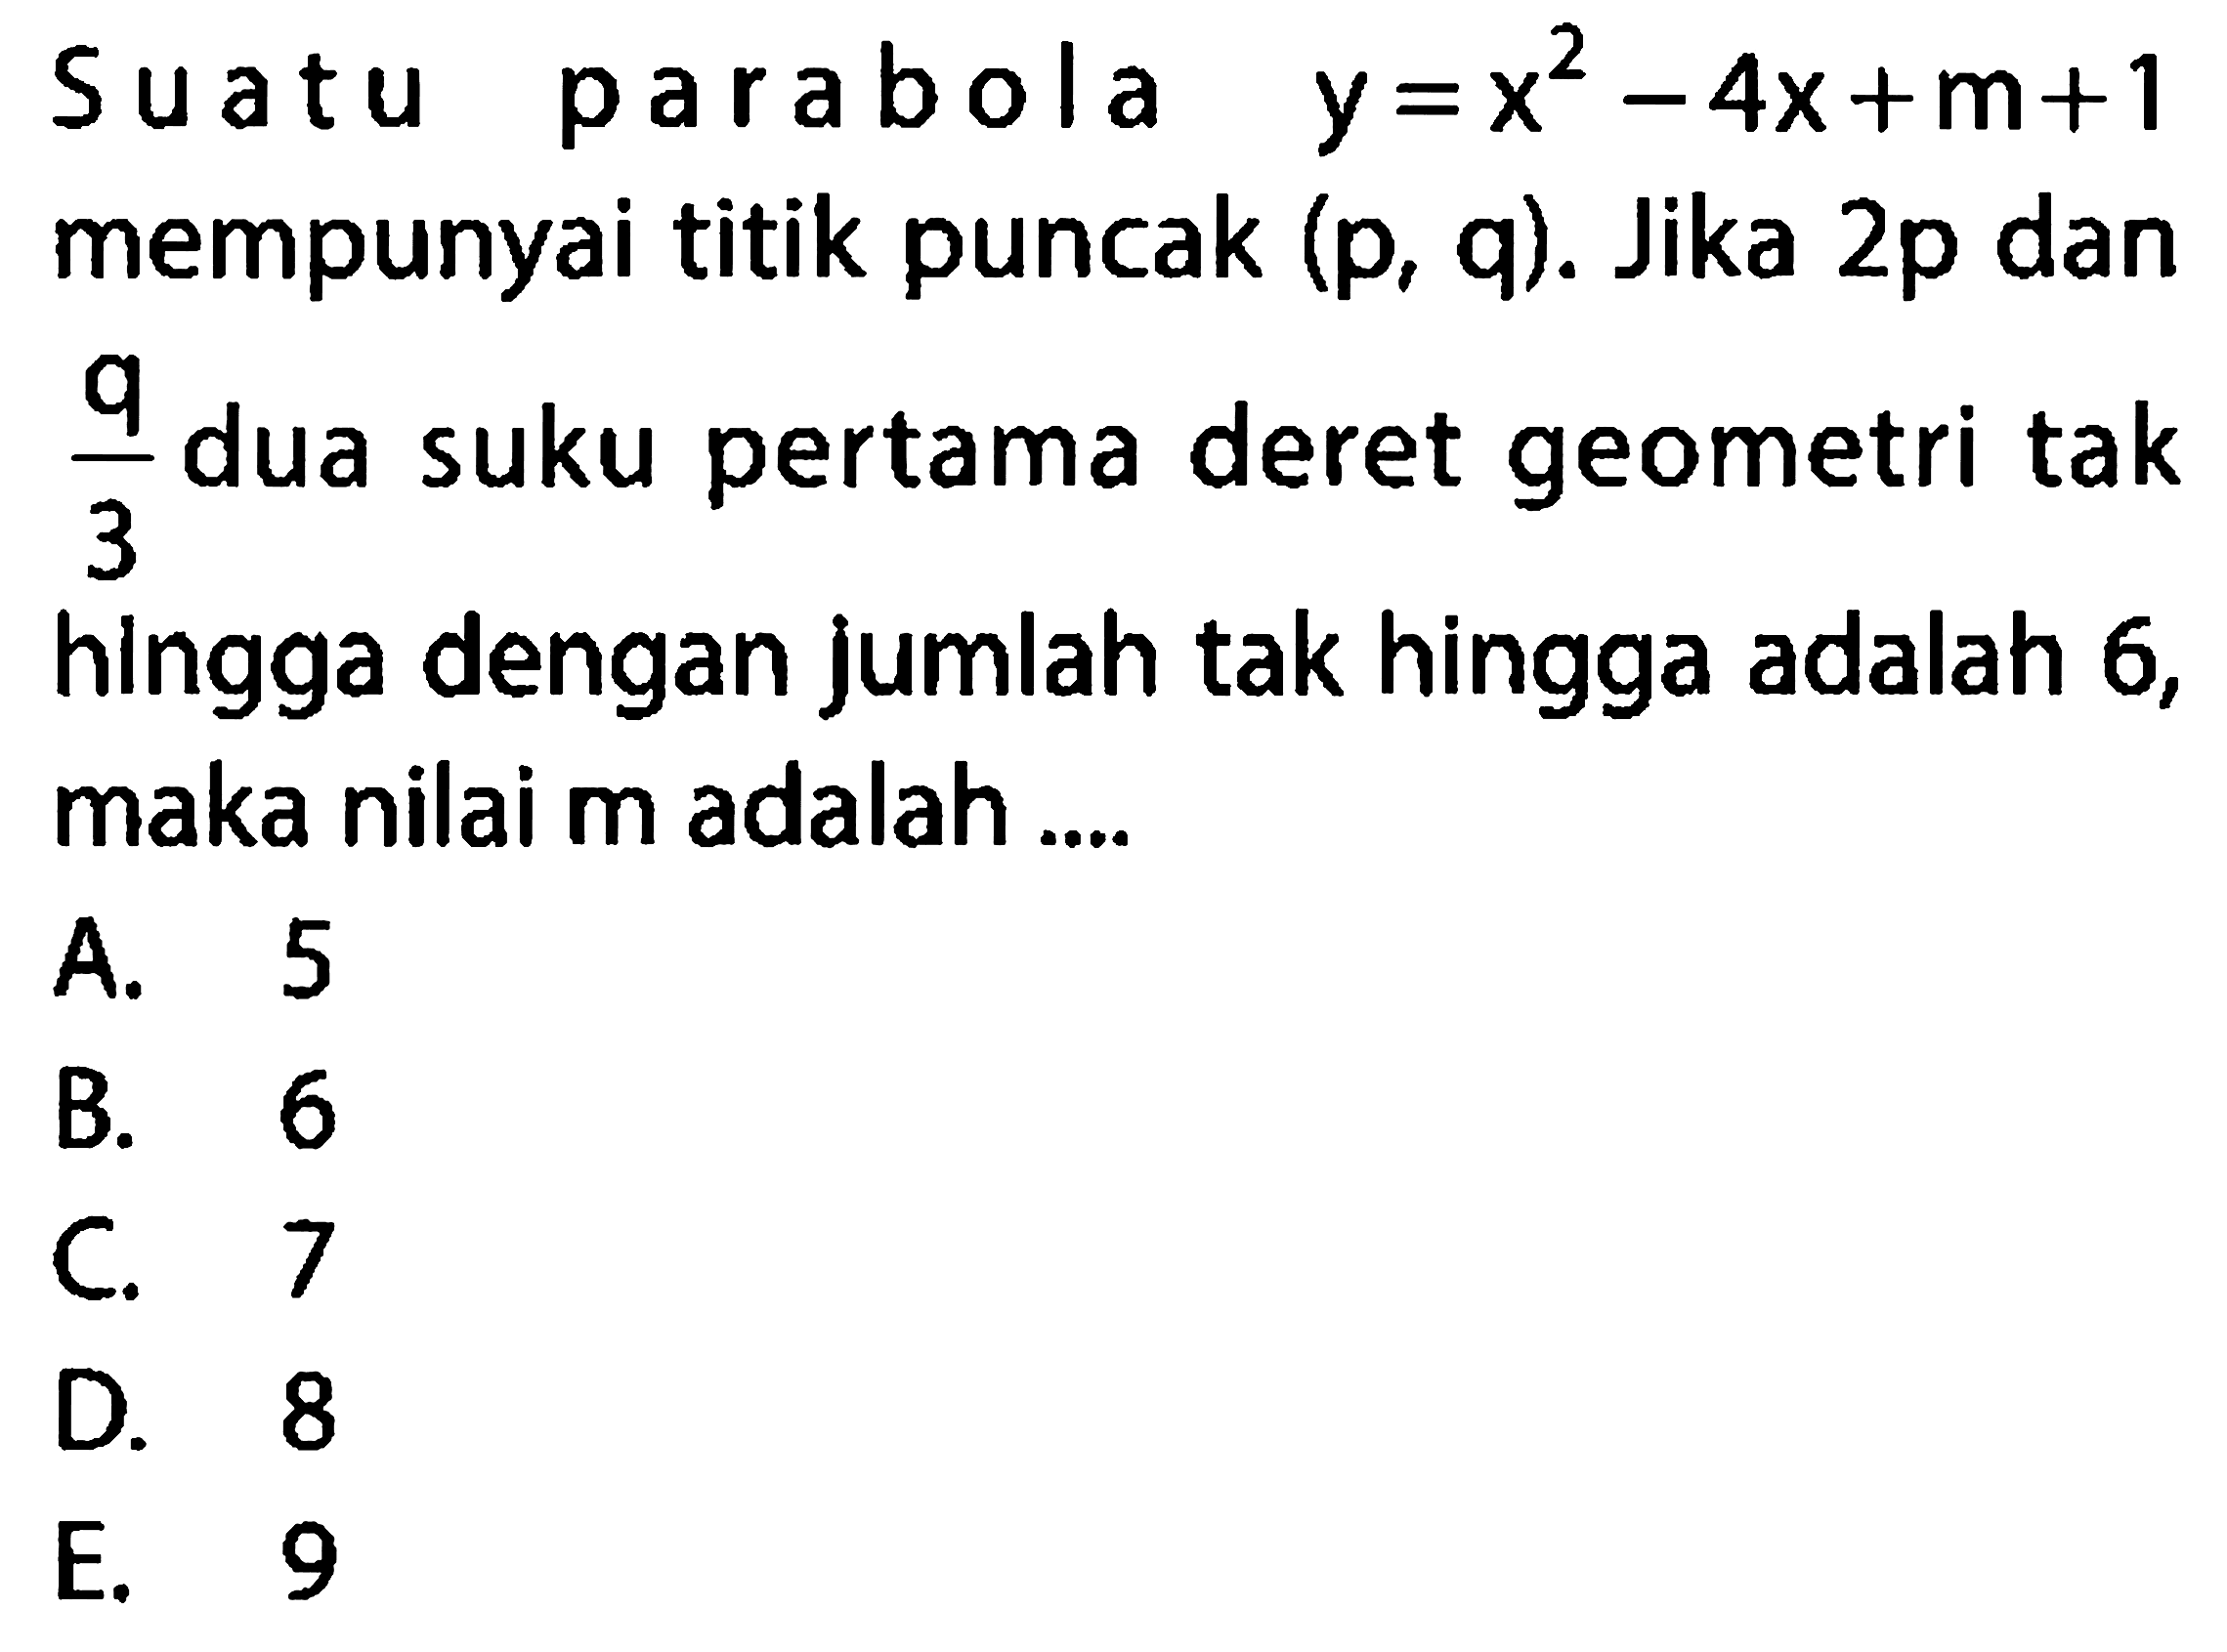 Suatu parabola y=x^2 - 4x + m + 1 mempunyai titik puncak (p, q). Jika 2p dan q/3 dua suku pertama deret geometri tak hingga dengan jumlah tak hingga adalah 6, maka nilai m adalah ....